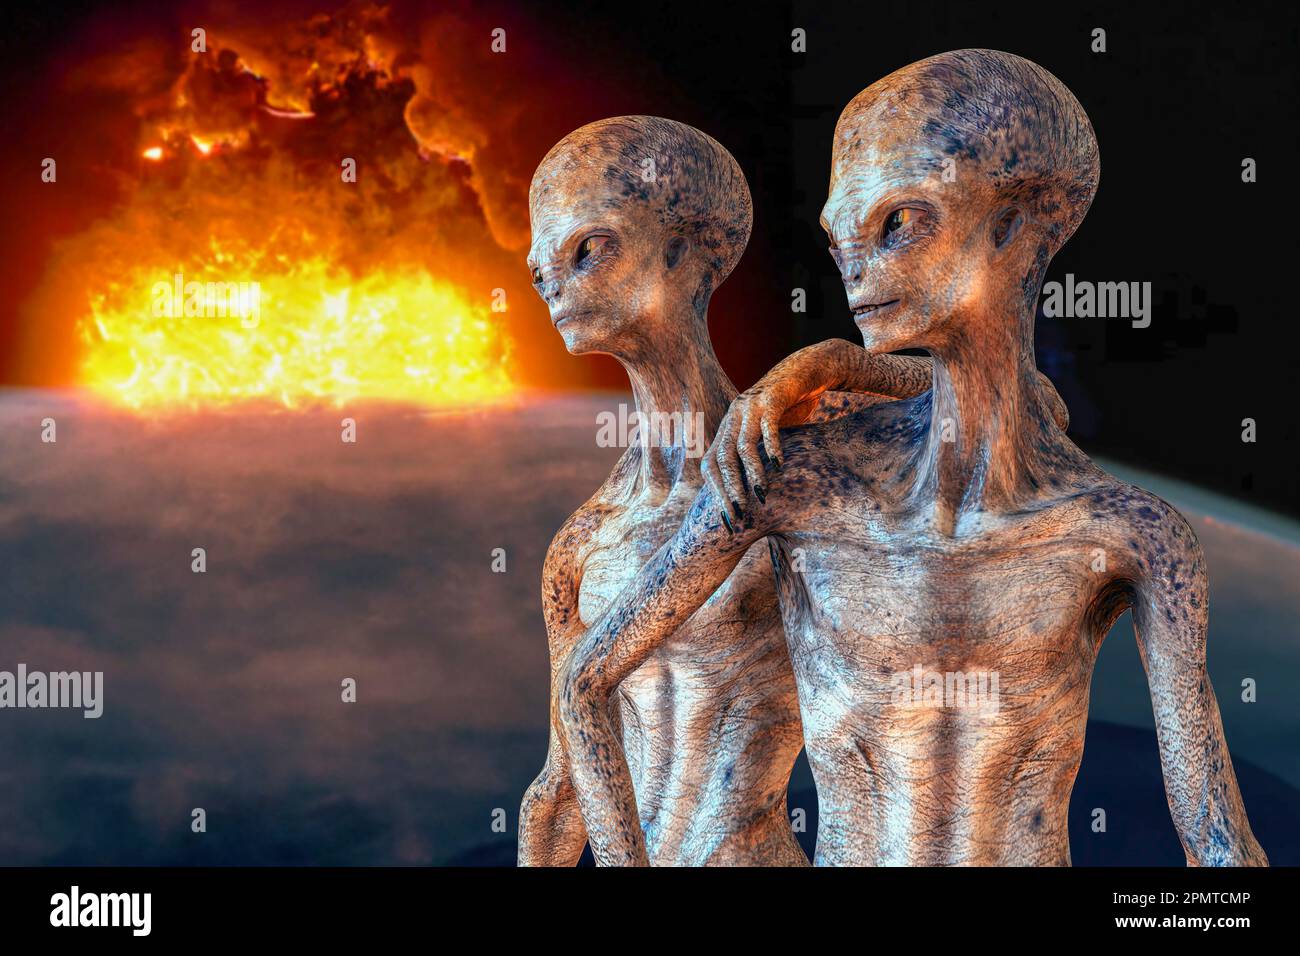 Alien, illustration Stock Photo